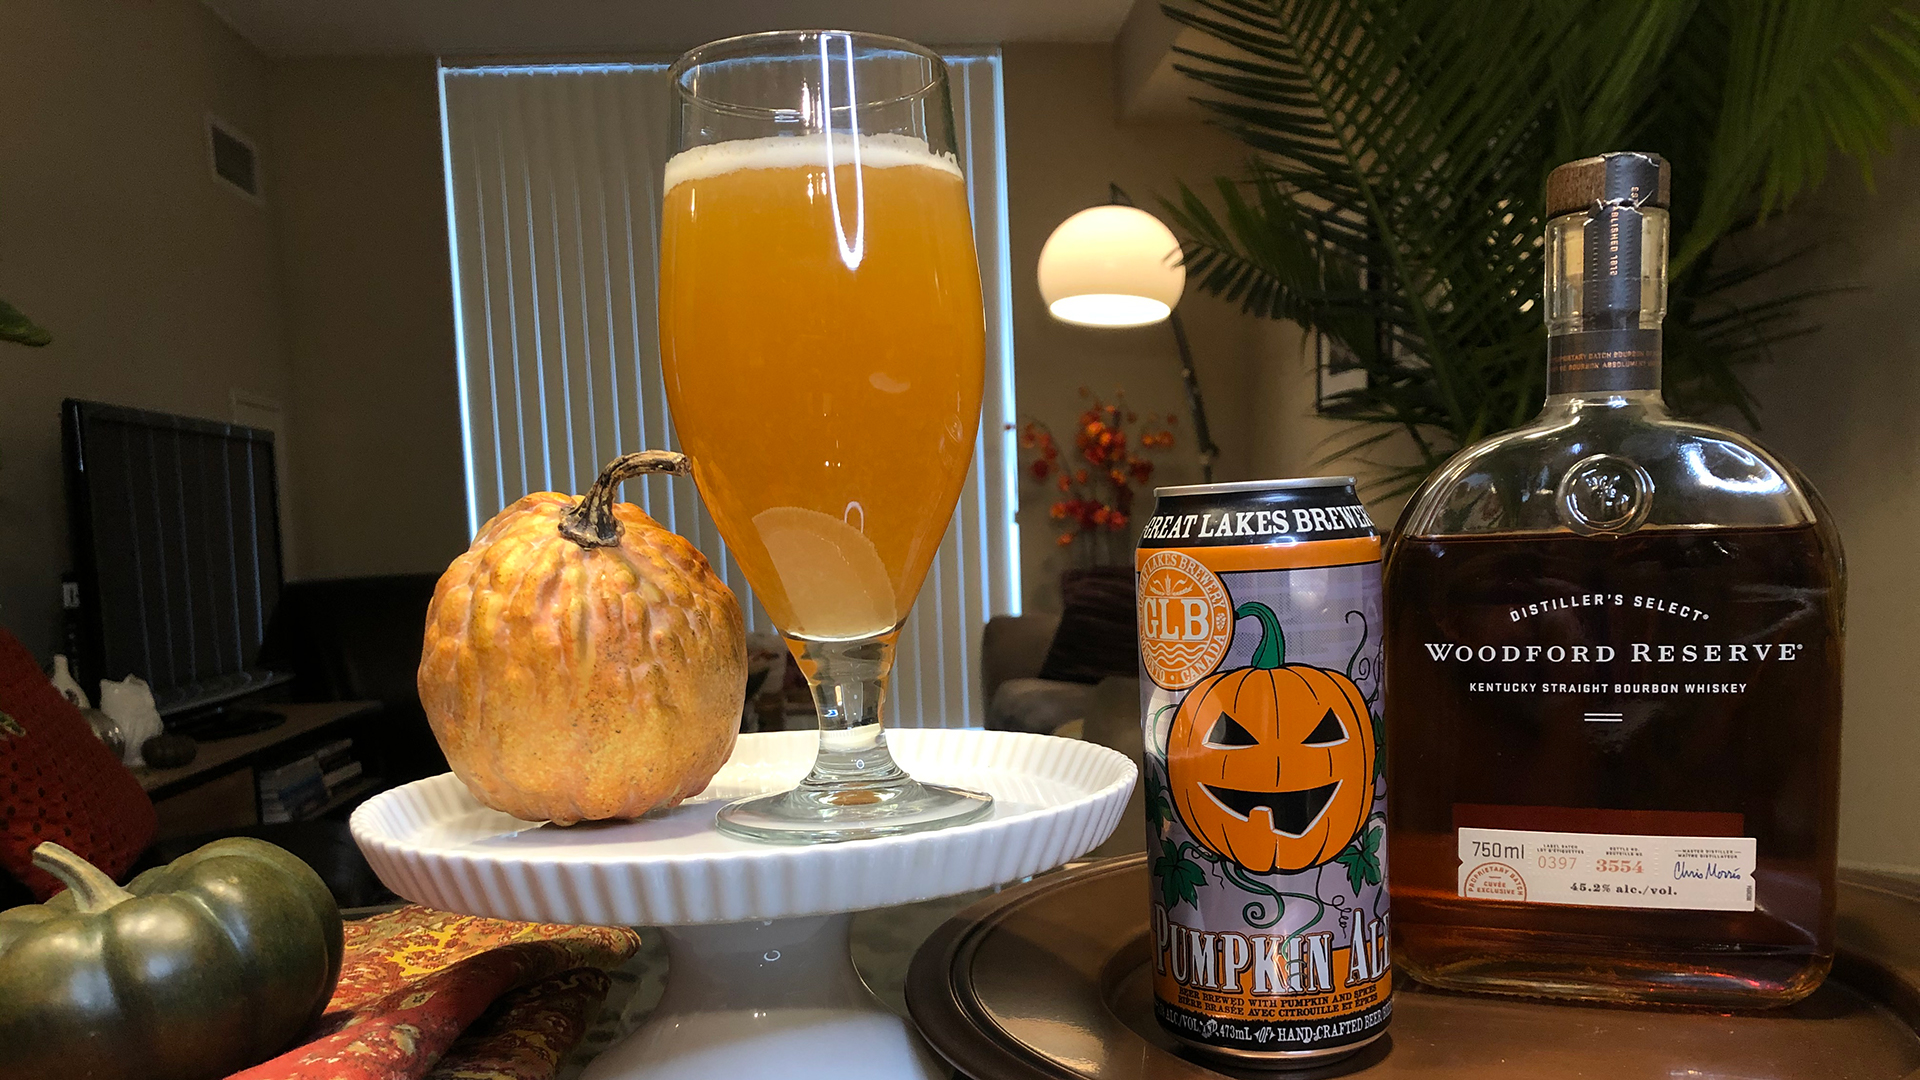 Pumpkin beer cocktail